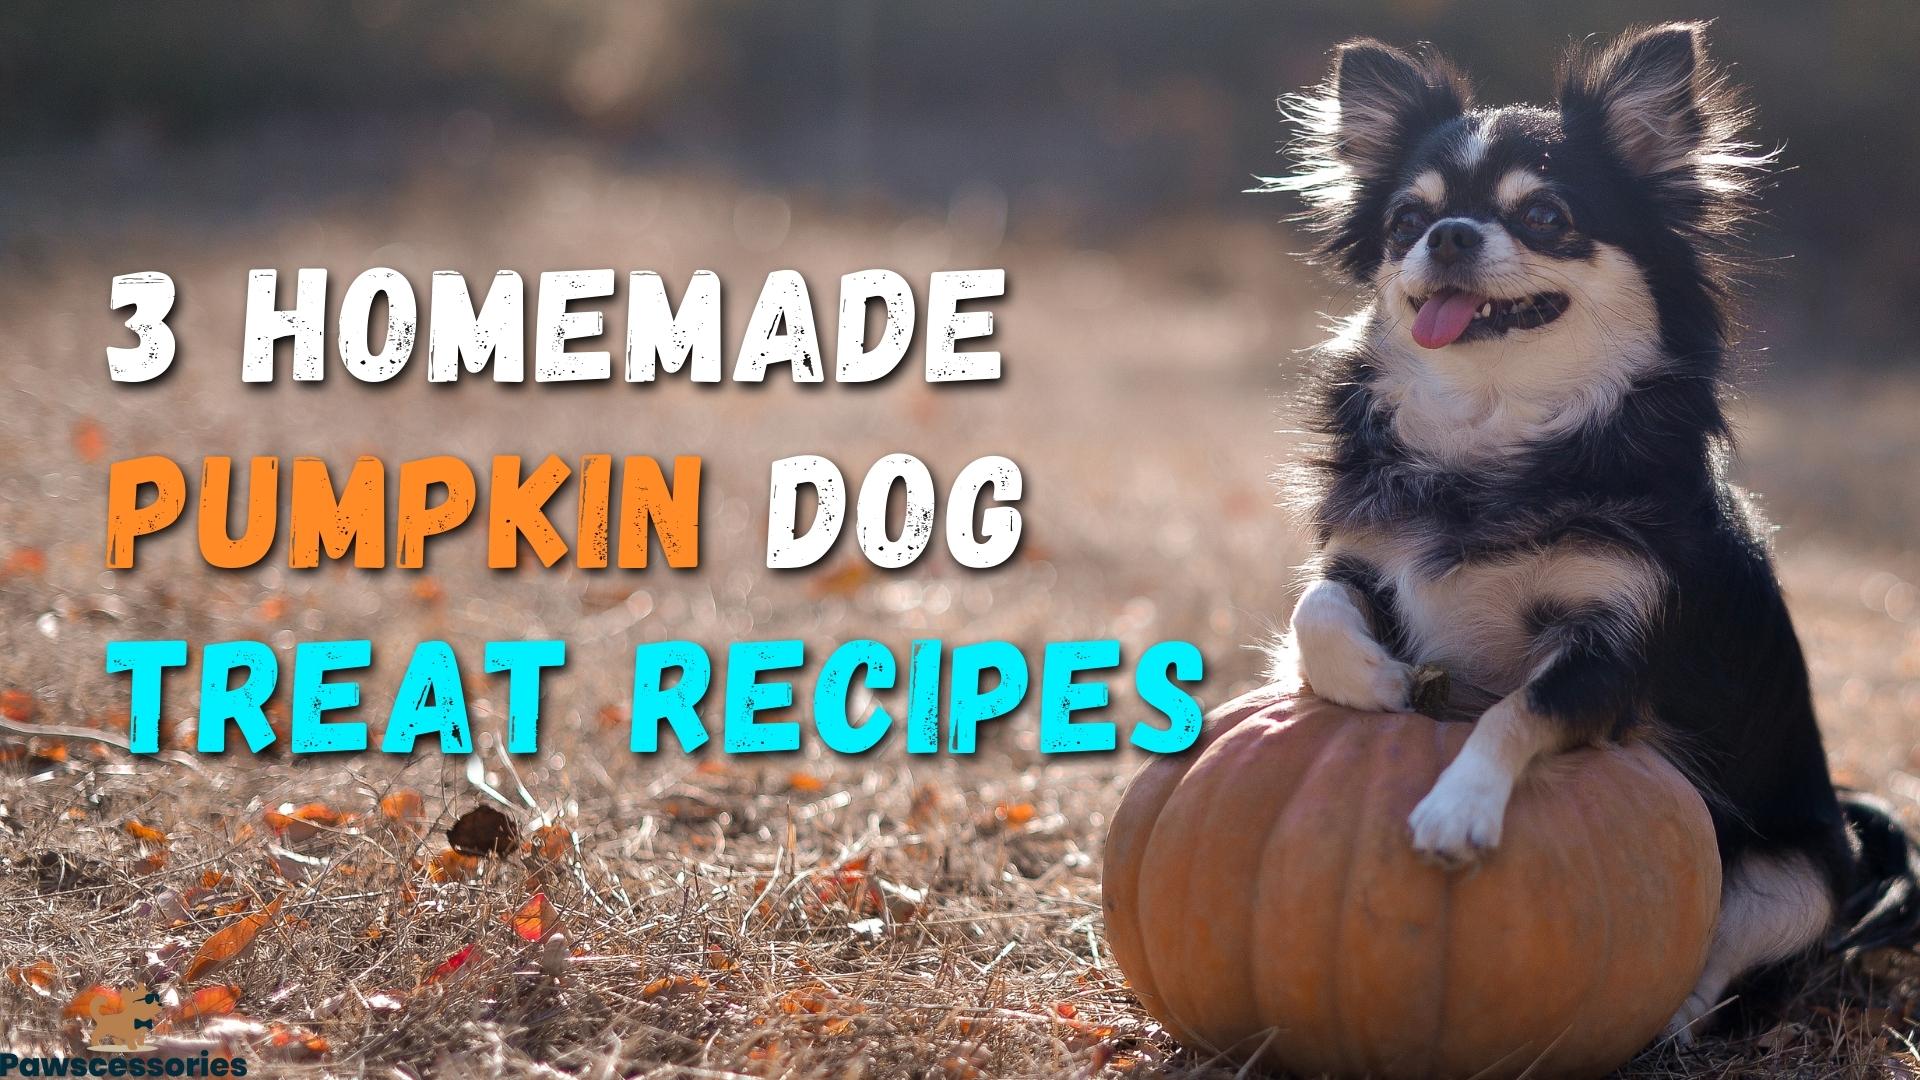 Homemade pumpkin dog treats